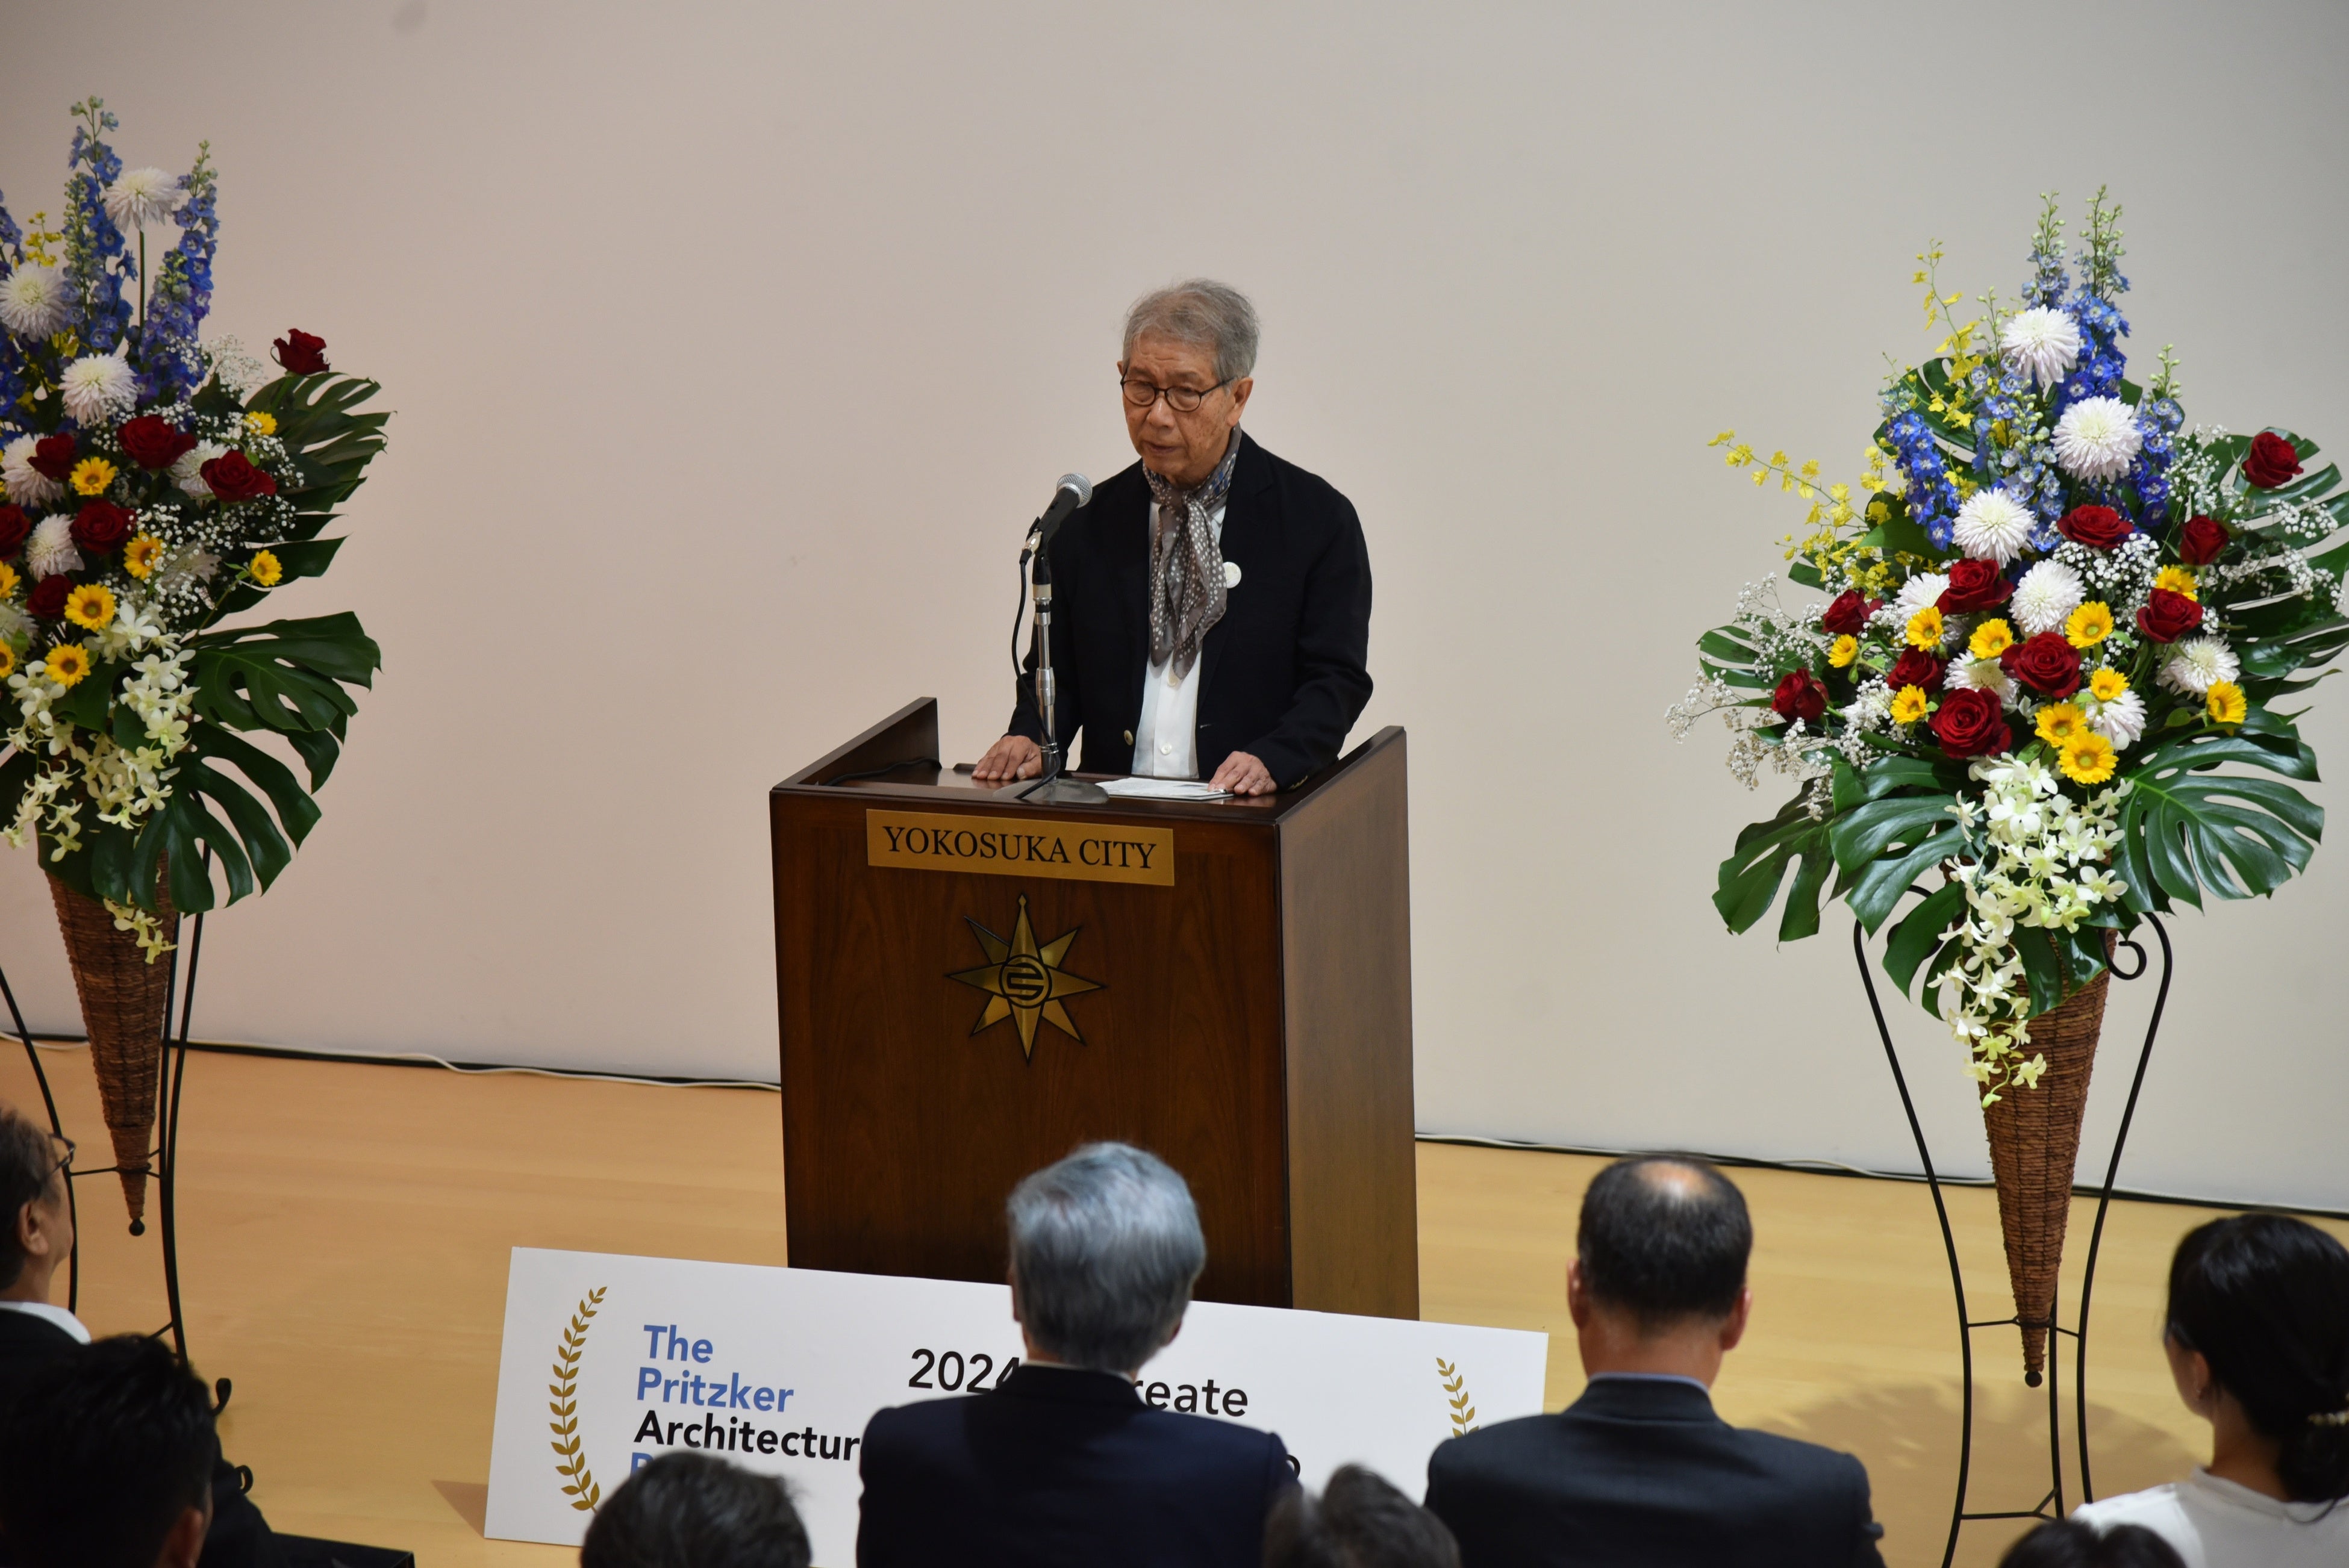 「山本理顕氏プリツカー賞受賞記念セレモニー」を開催しました